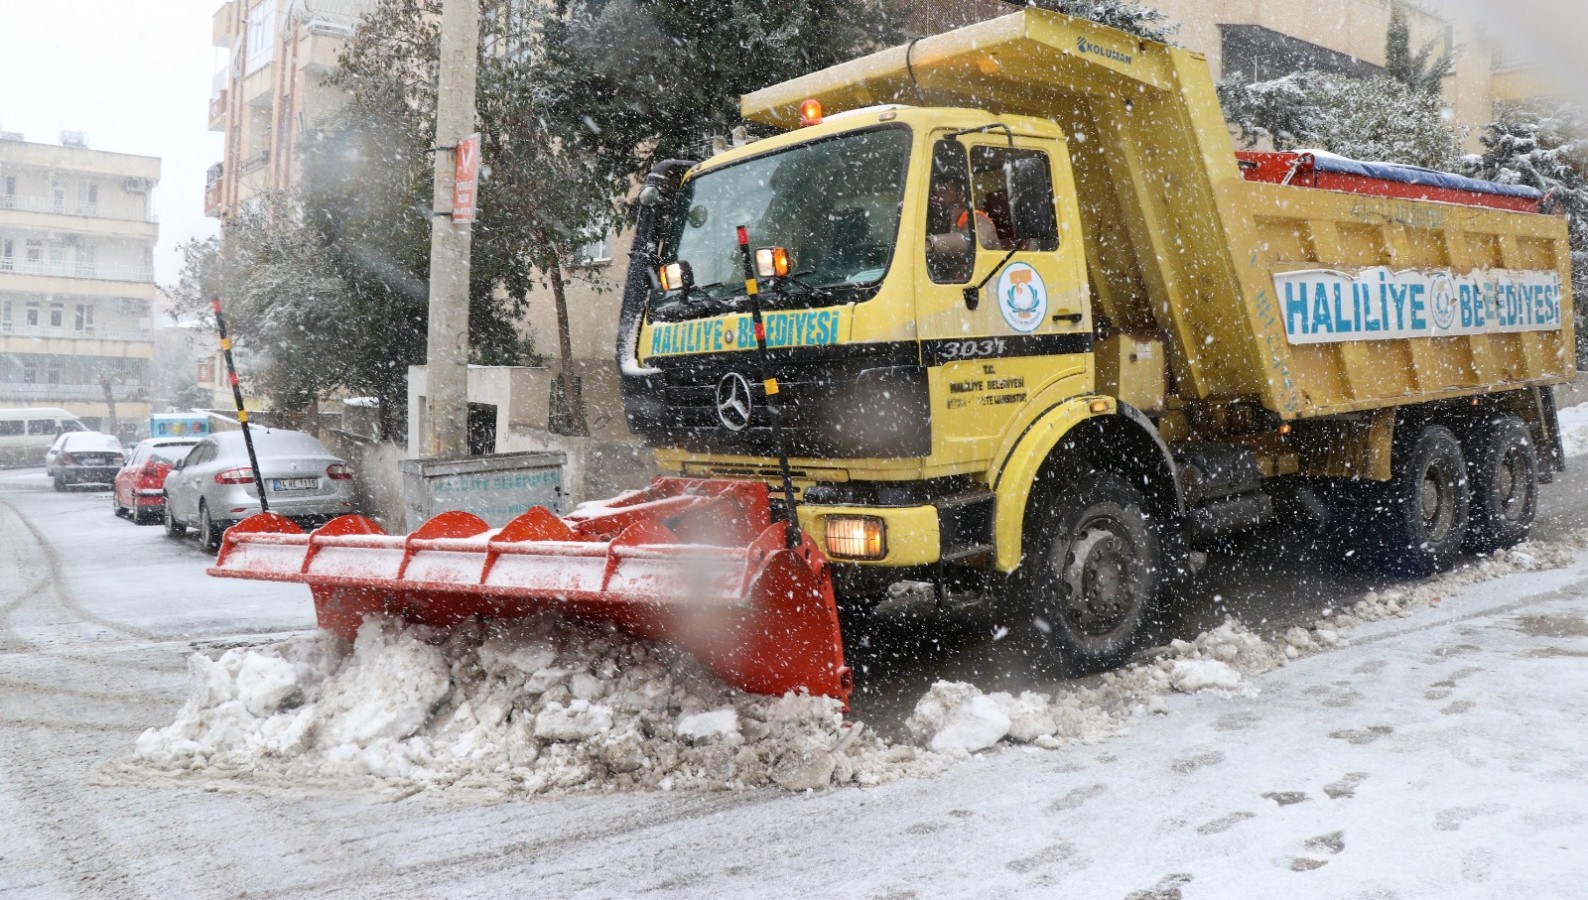 Haliliye Belediyesi’nin karla mücadelesi kaldığı yerden devam;